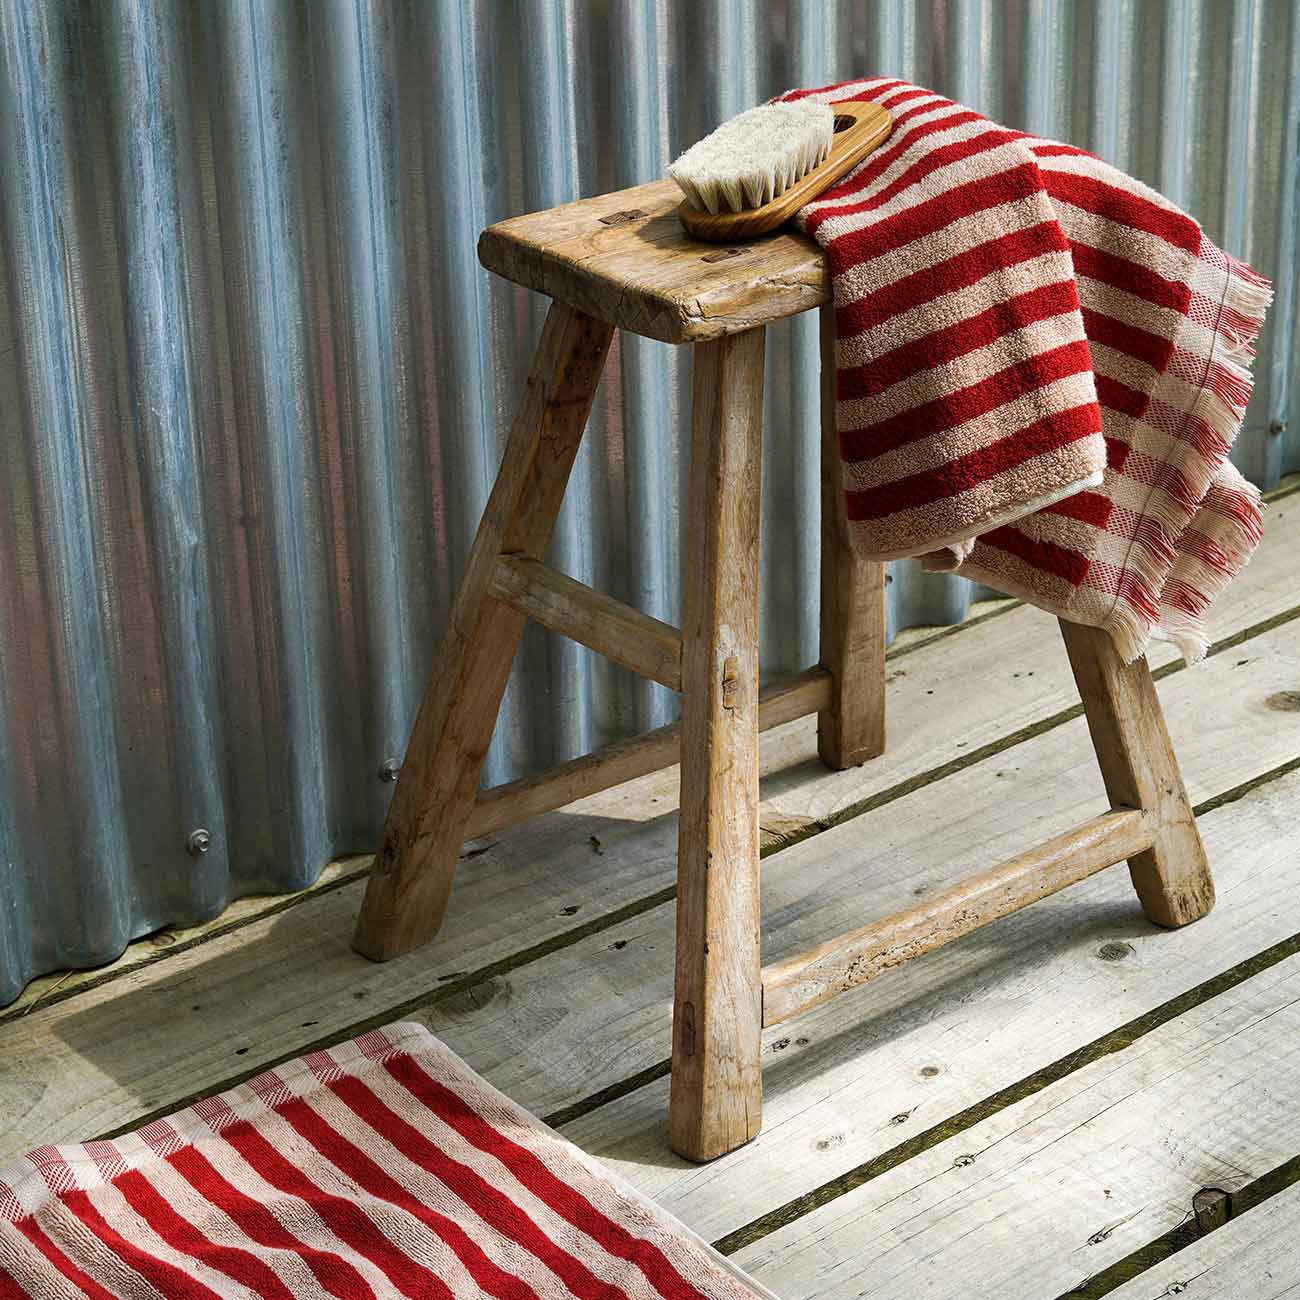 http://us.pigletinbed.com/cdn/shop/files/Piglet-in-Bed-Bathroom-Collection-Pembroke-Stripe-Cotton-Hand-Towel-Sandstone-Red_1.jpg?v=1688137598